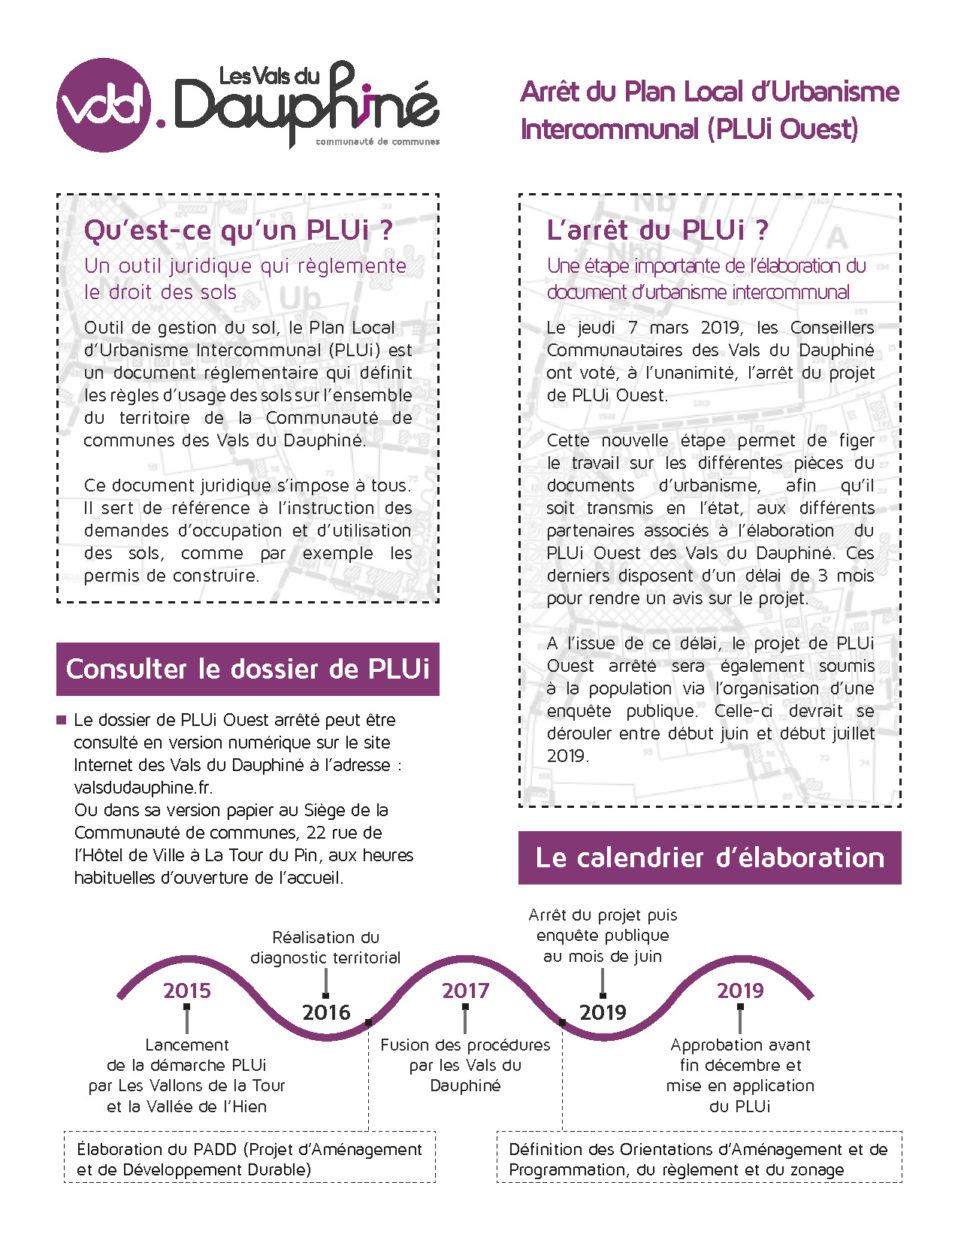 Flyer "Arrêt du PLUi Ouest" - page 2